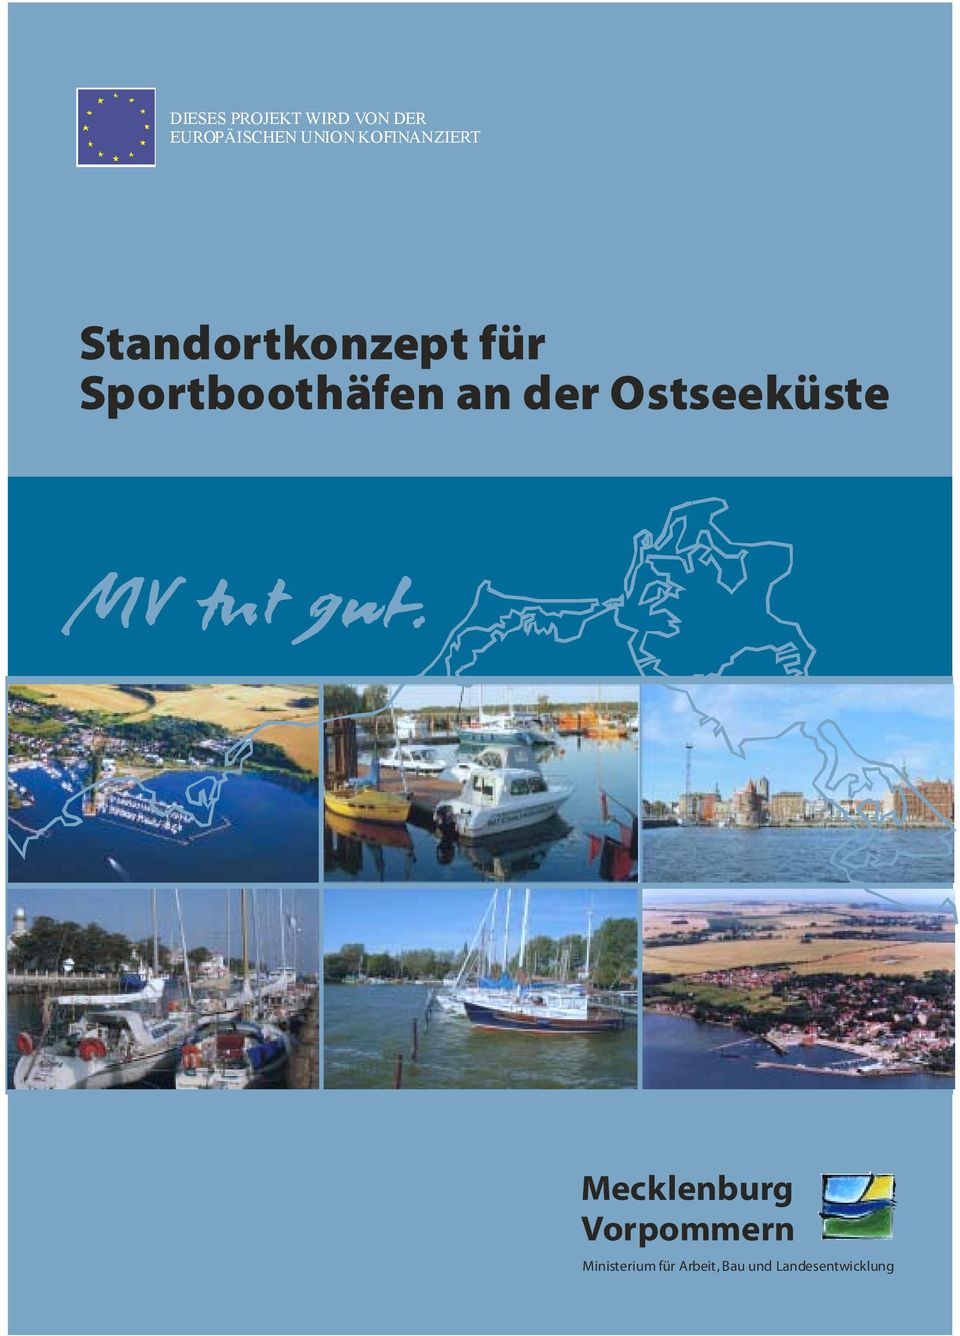 Sportboothäfen an der Ostseeküste Mecklenburg